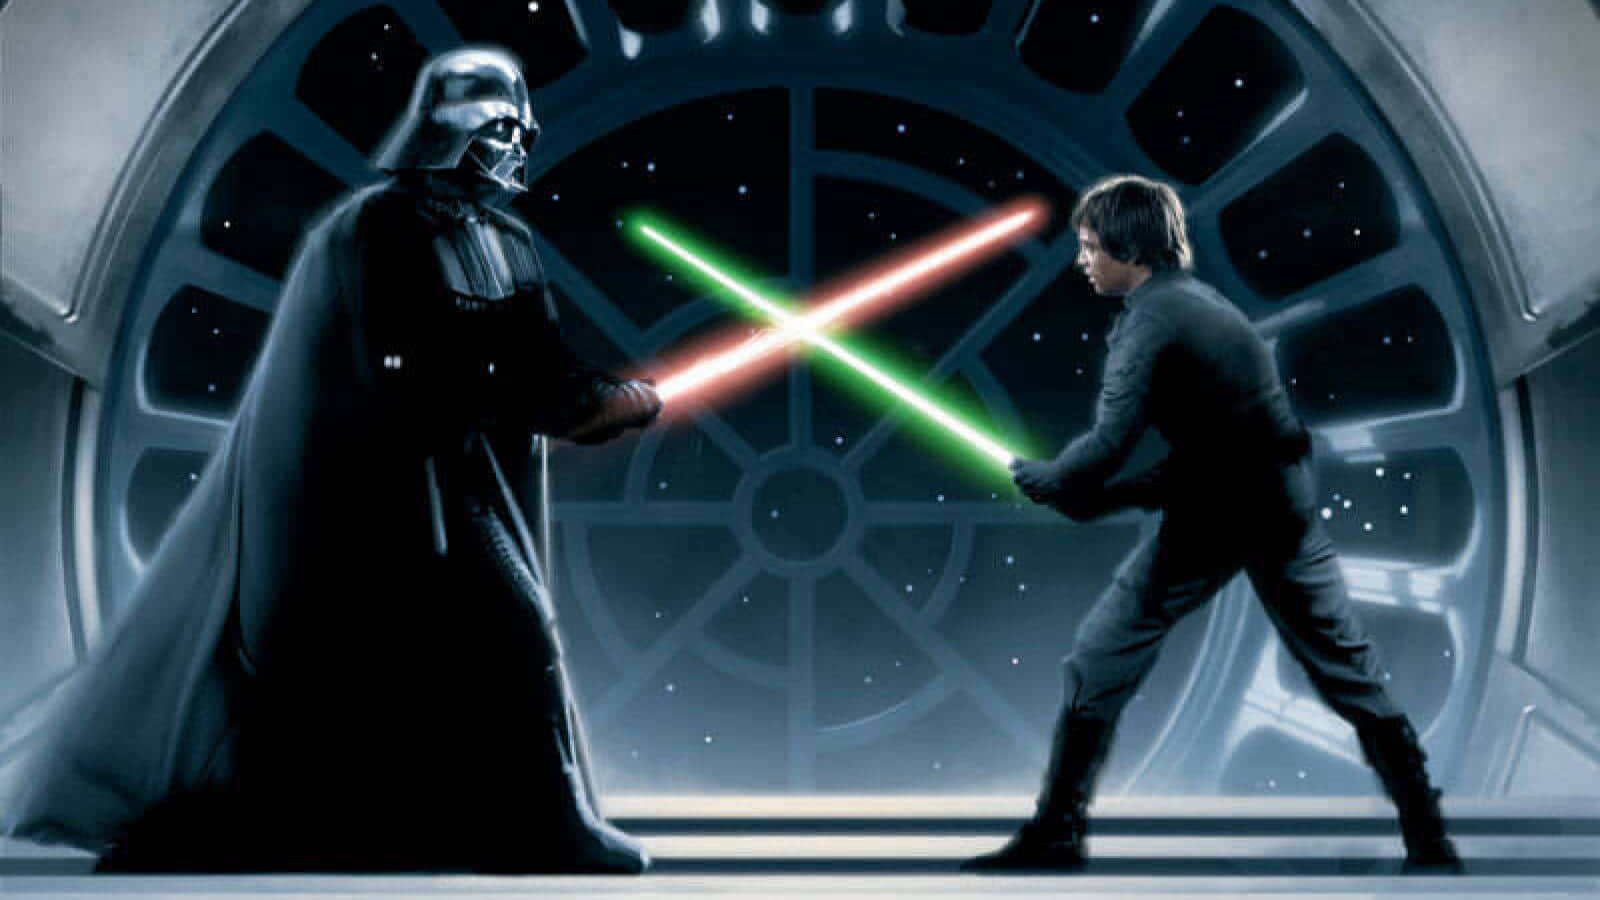 Escenaicónica En El Retorno Del Jedi Con Luke Skywalker Y Darth Vader. Fondo de pantalla